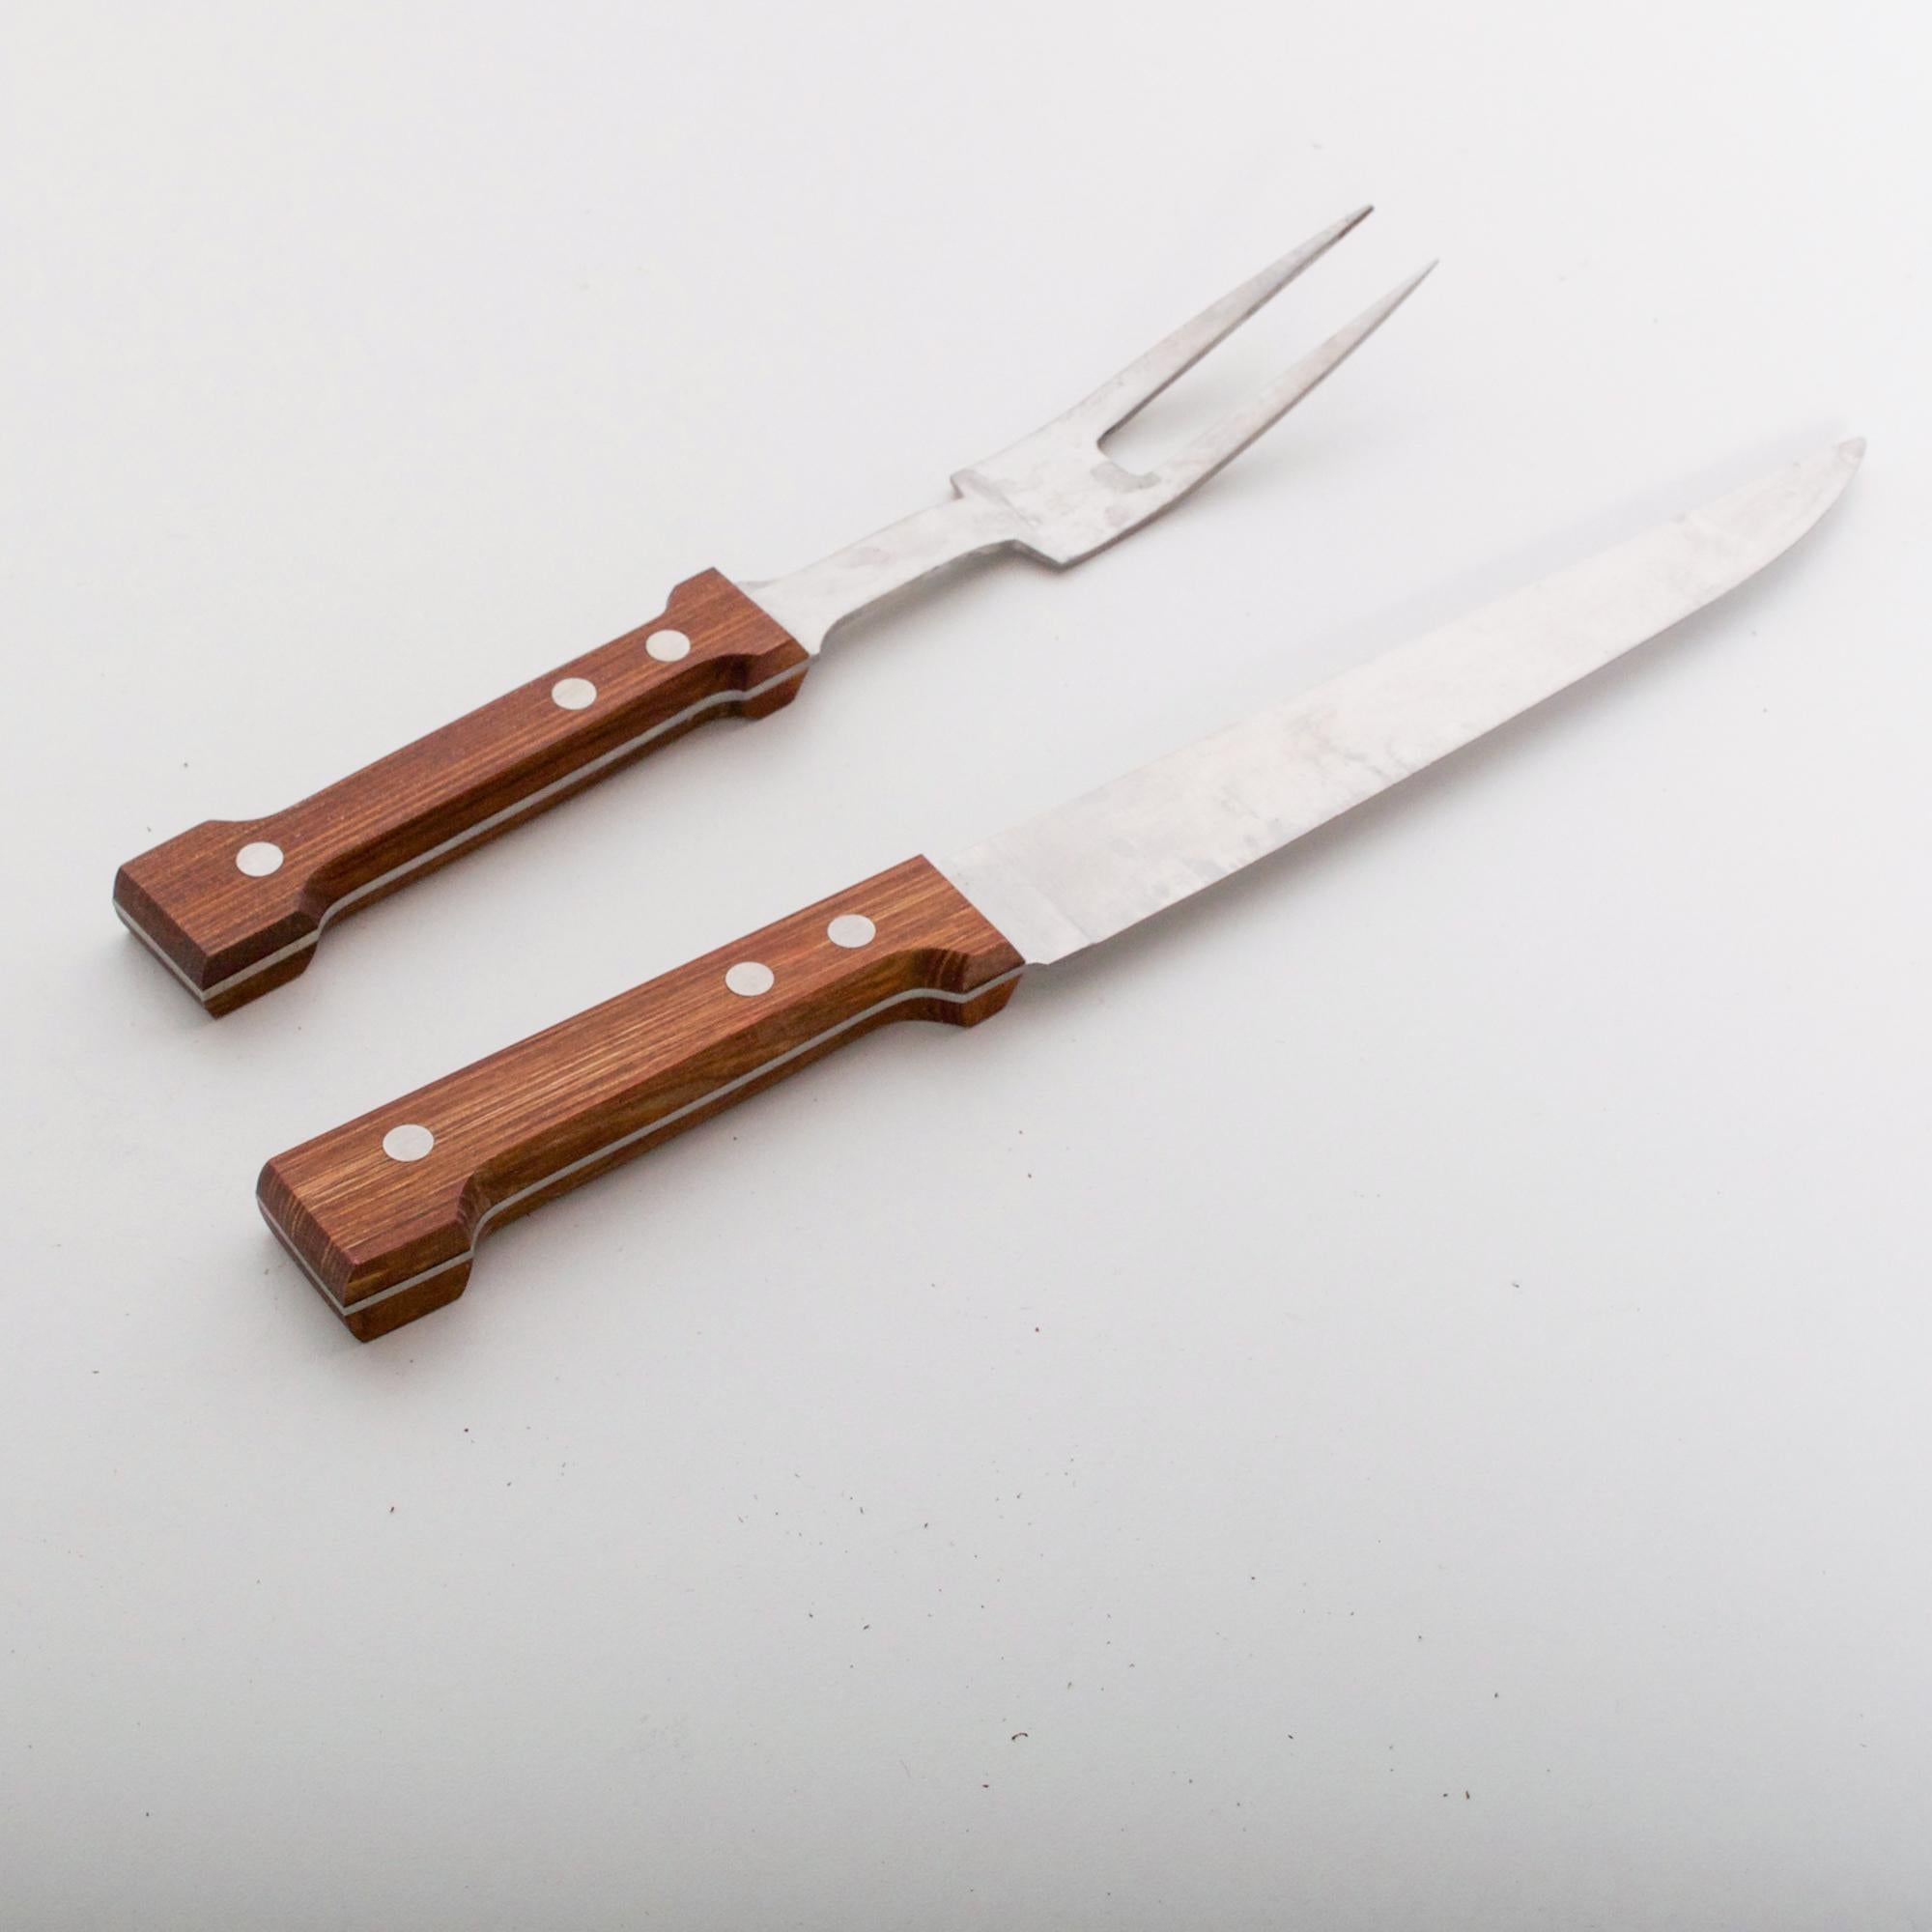 Danish 1970s Dansk Carving Set Gunnar Cyren Cutlery Knife & Fork Boxed Denmark